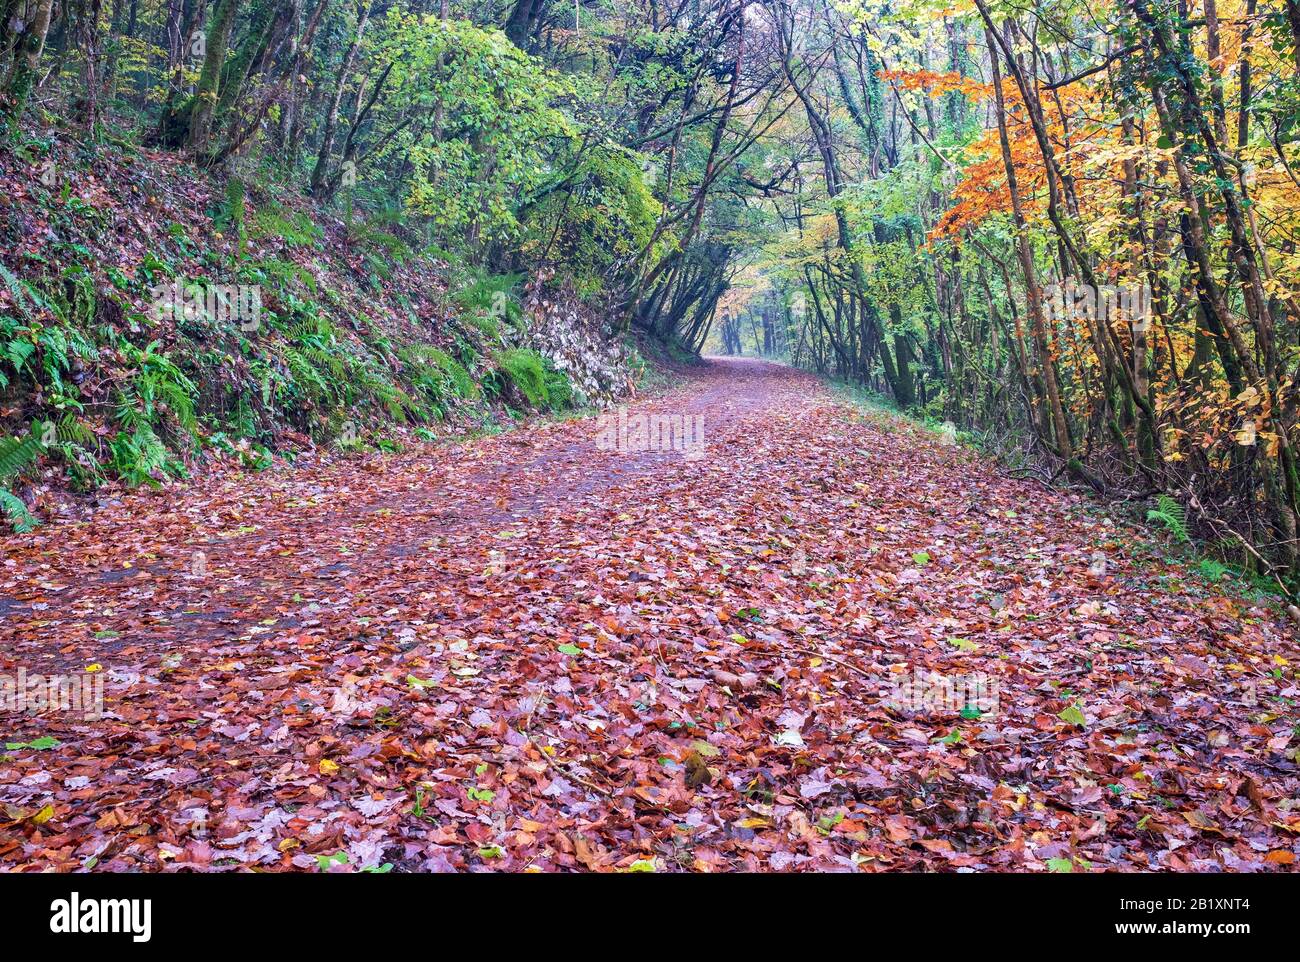 Autunnale, passeggiate nei boschi con foglie colorate autunnali, vita rurale, passeggiate in campagna, tranquilla, vita Devon, Devon Nord, Sud Ovest Foto Stock